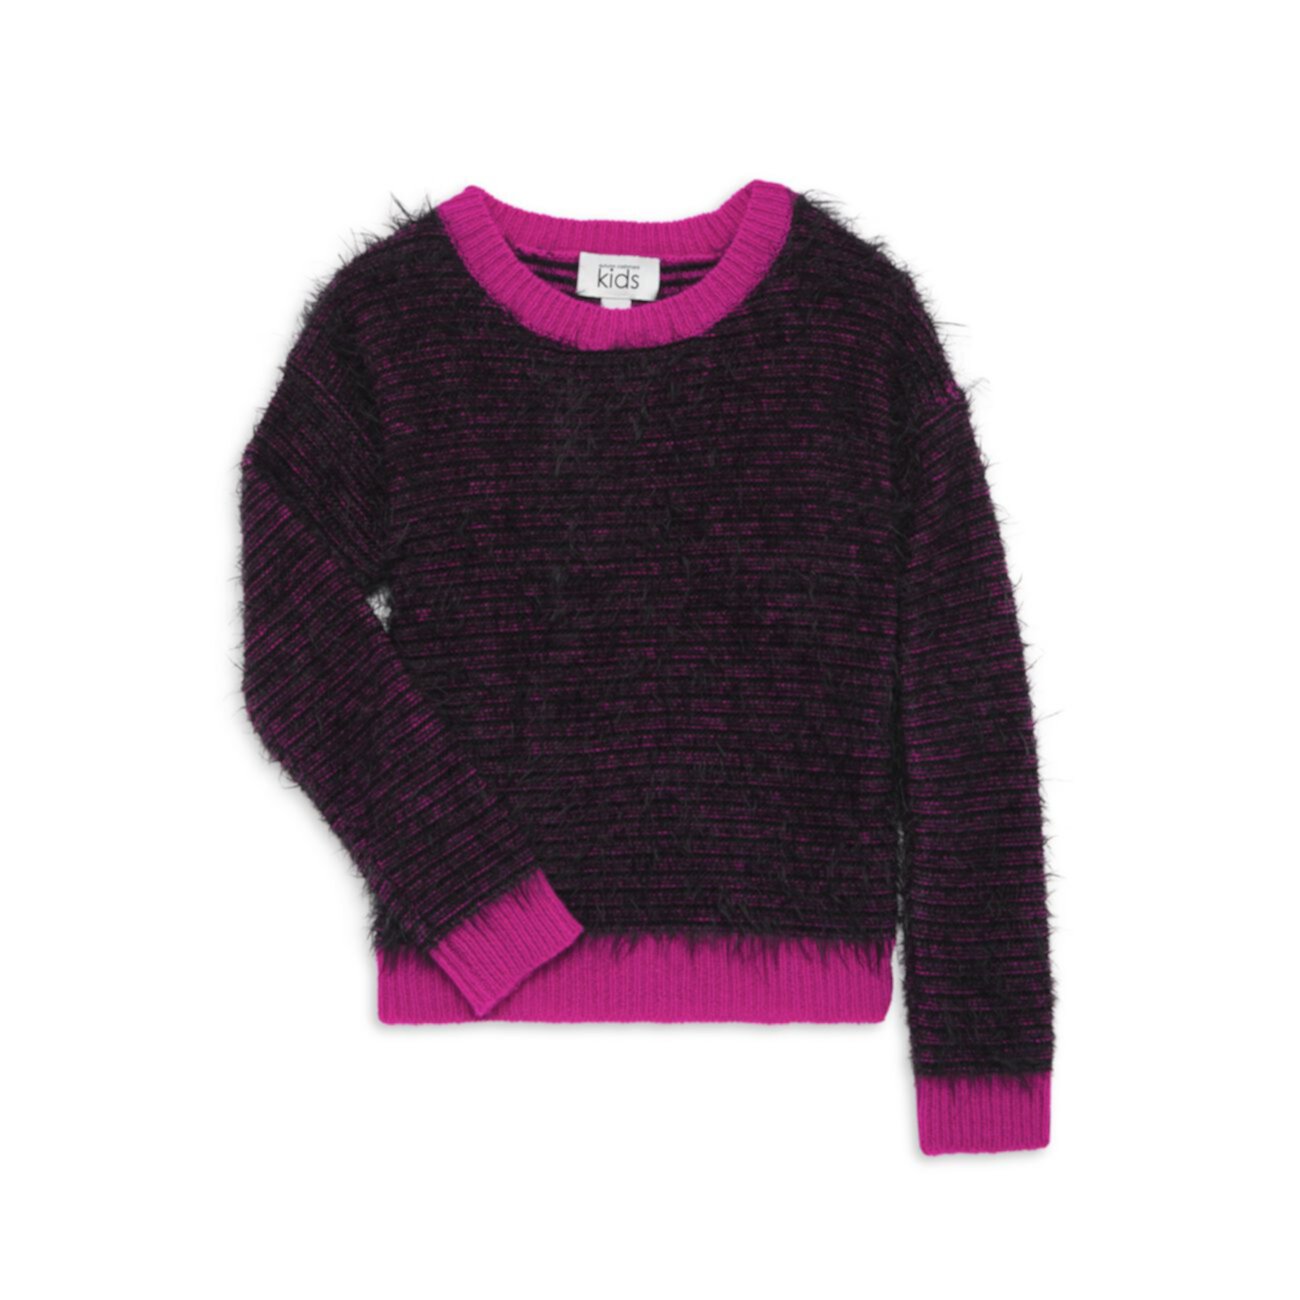 Полосатый свитер для девочек Fuzzy Feeder Autumn Cashmere